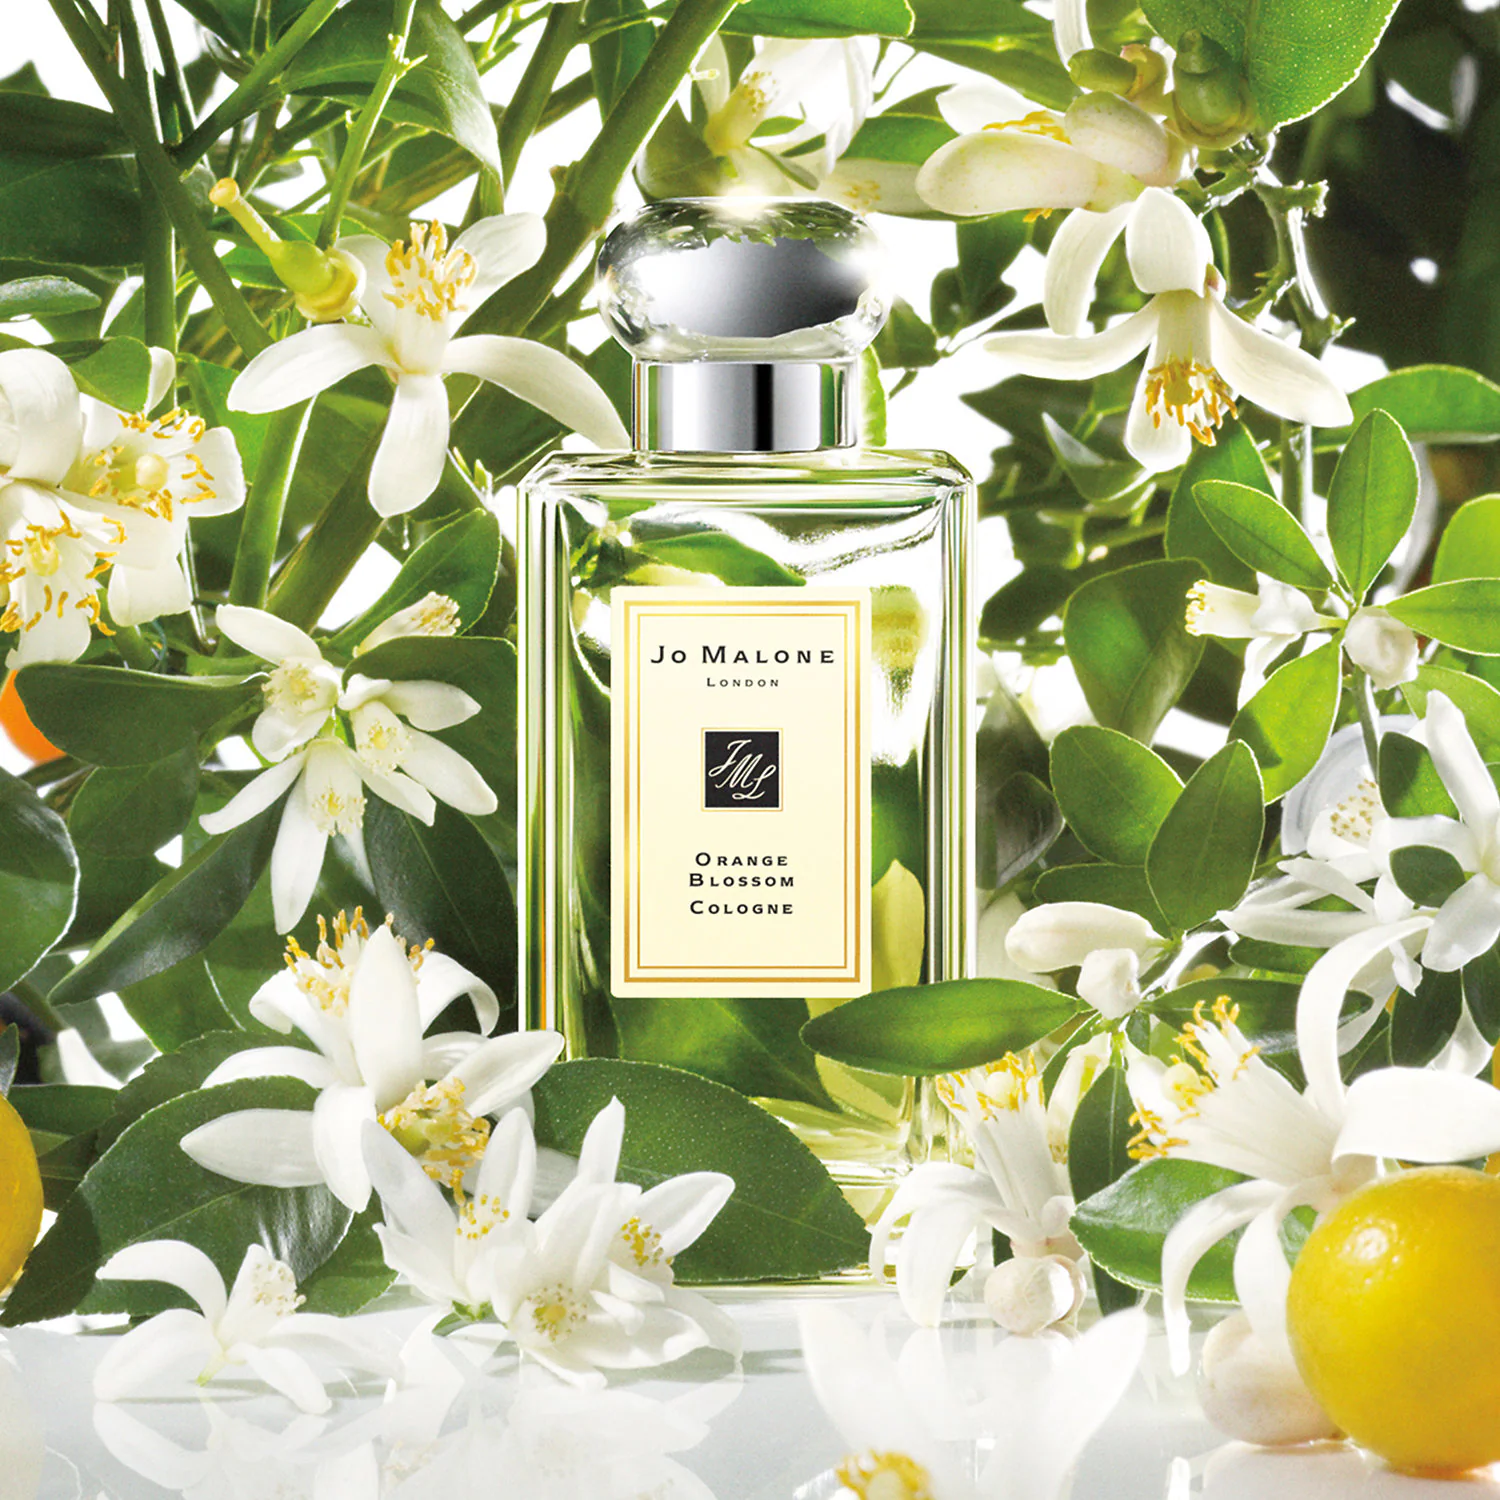 Fragancia Orange Blossom de Jo Malone con acordes de clementina y azahar, recomendada como perfume para boda.